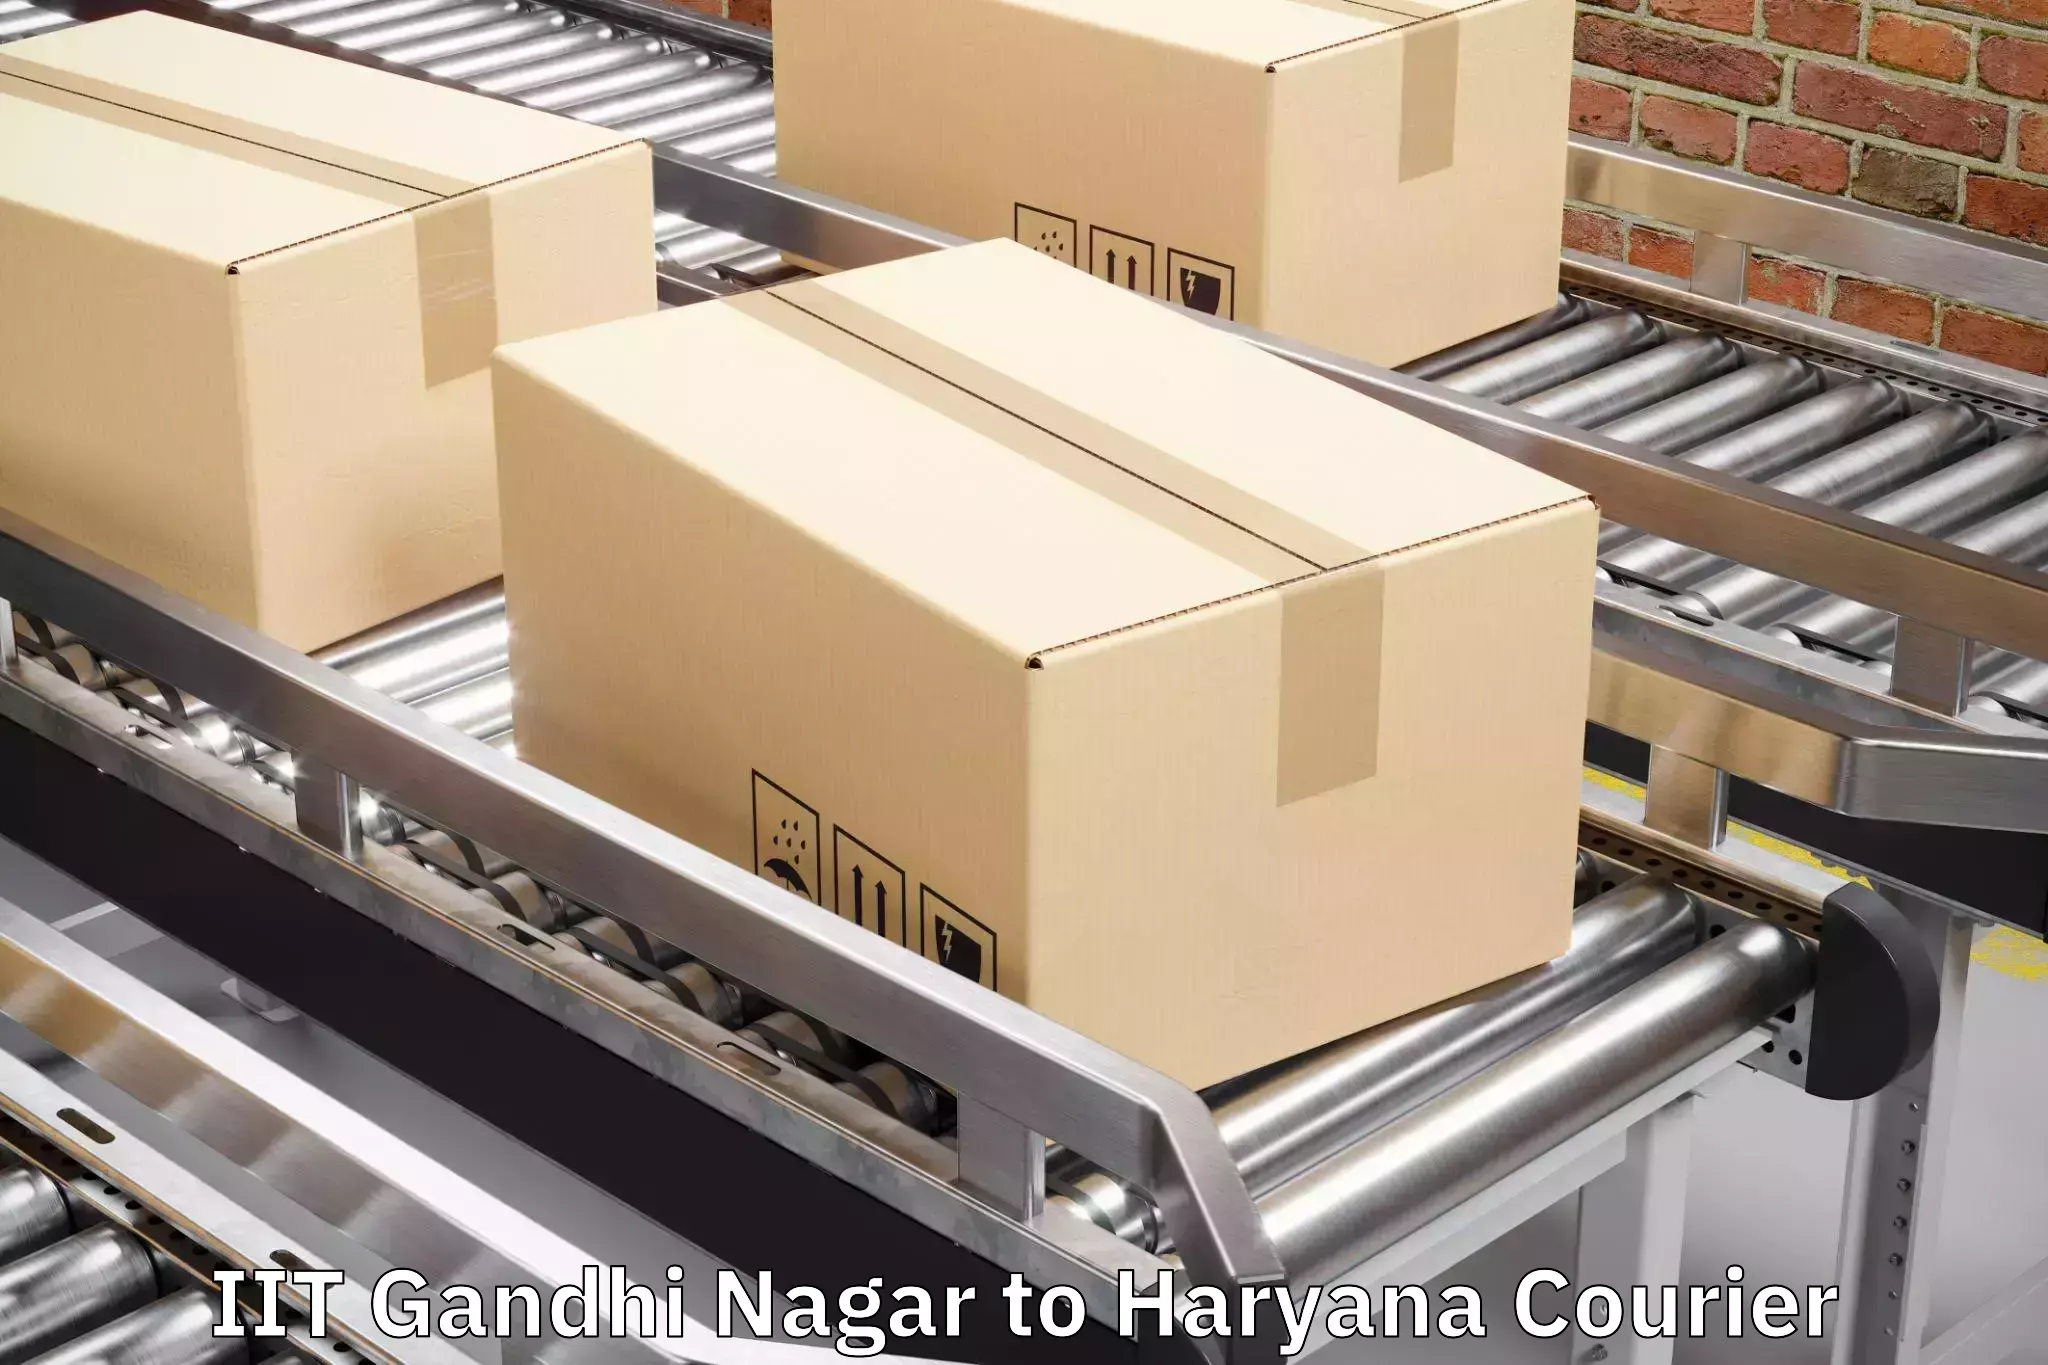 Single item baggage courier IIT Gandhi Nagar to NCR Haryana